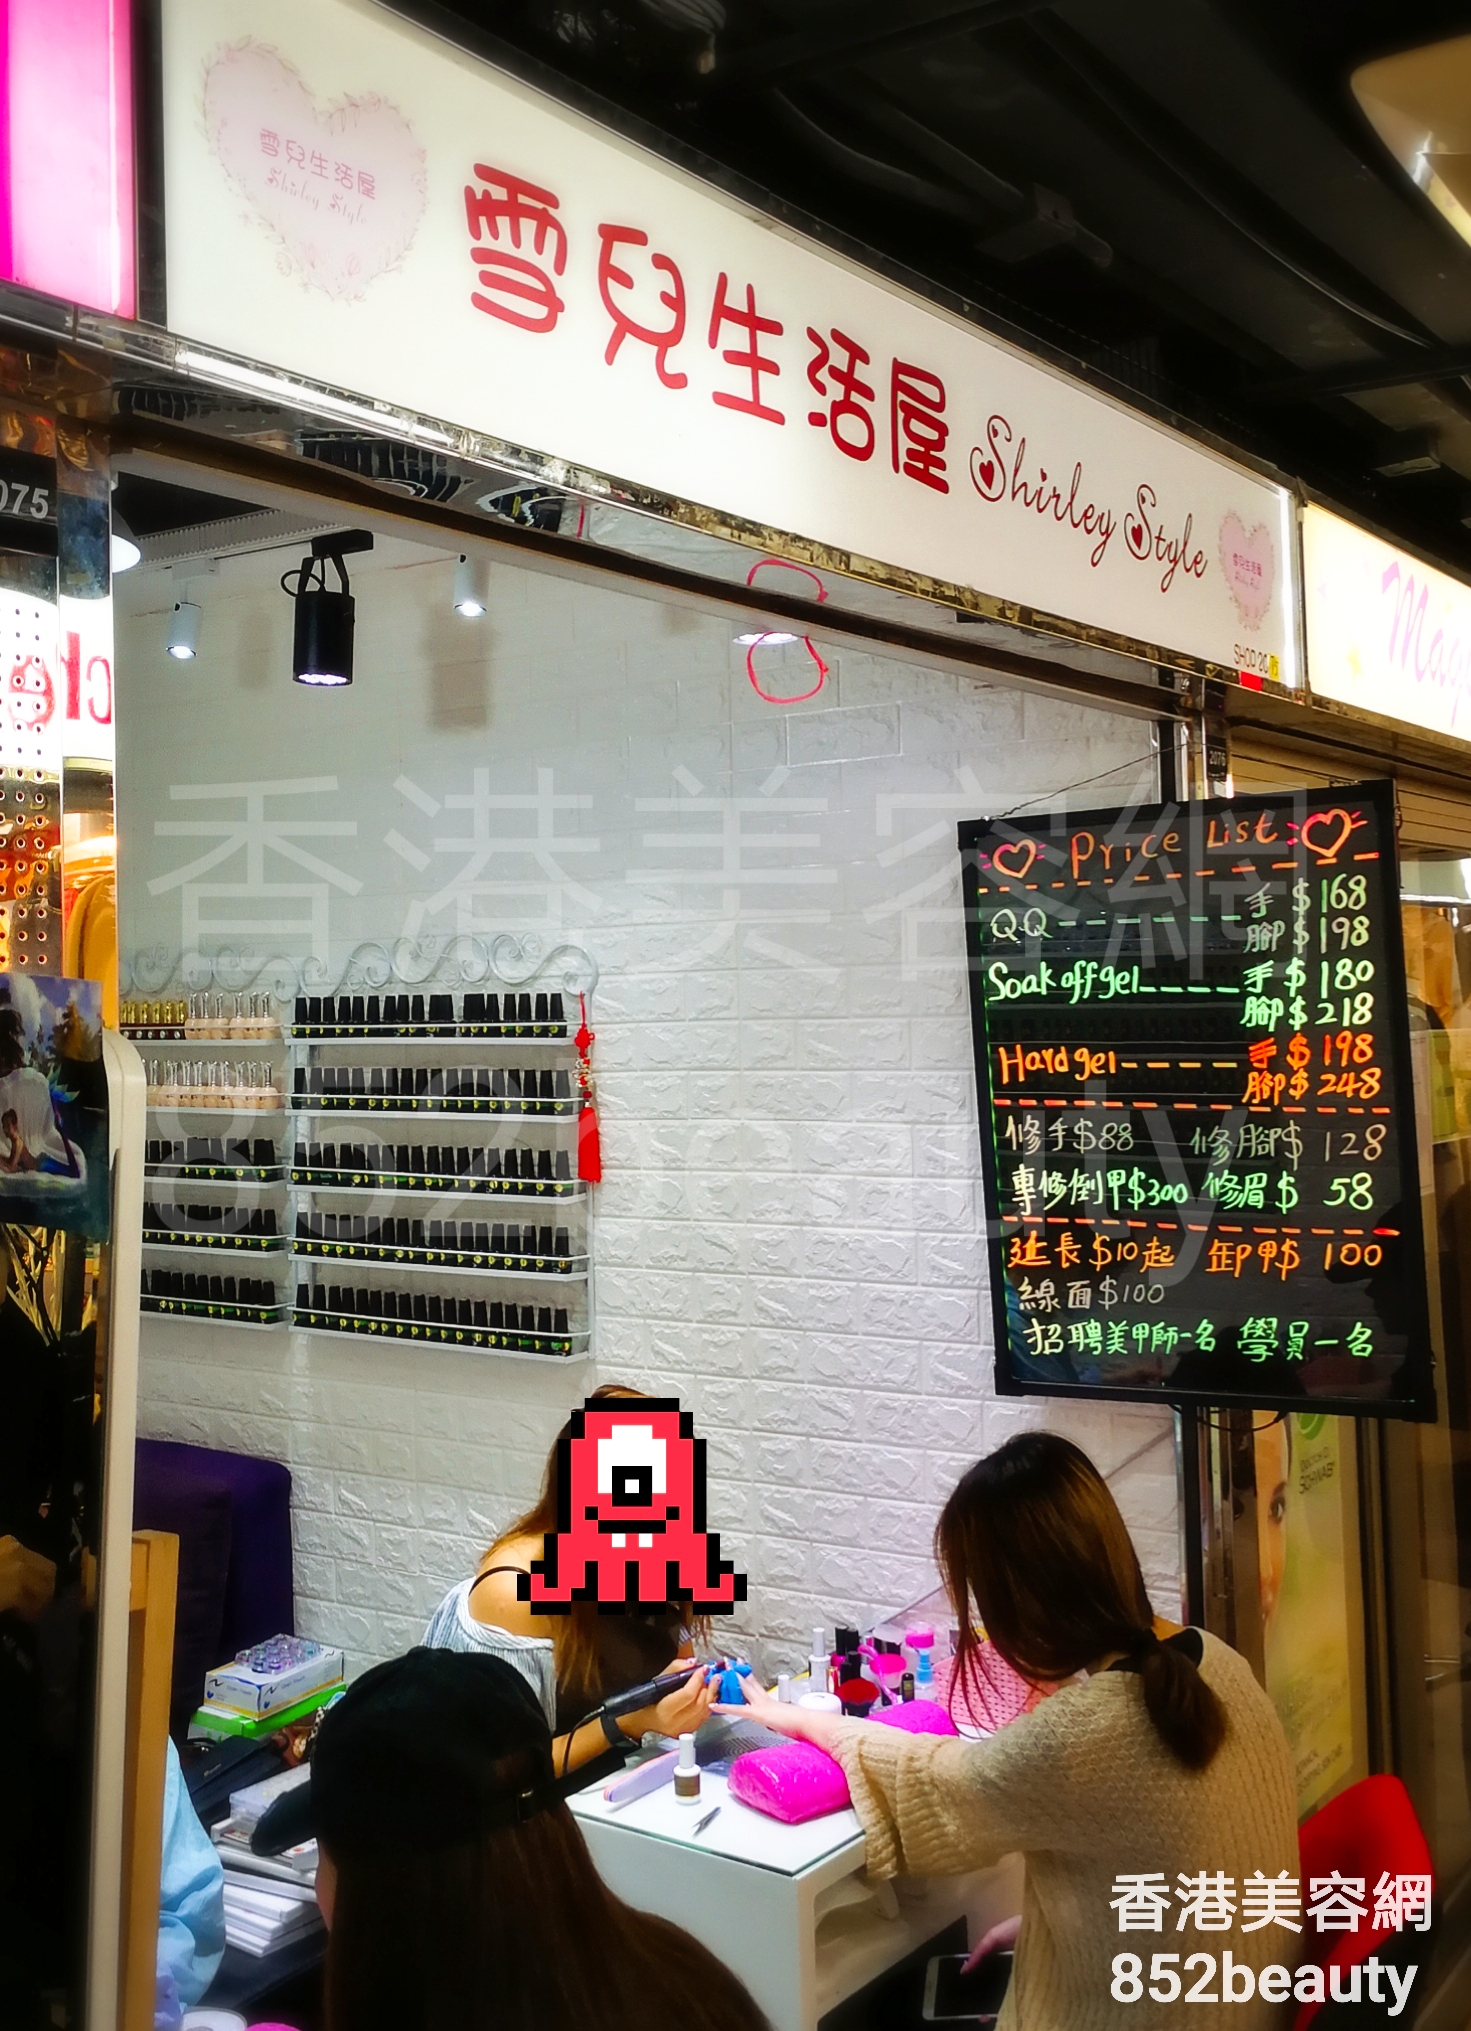 香港美容網 Hong Kong Beauty Salon 美容院 / 美容師: 雪兒生活屋 Shirley Style